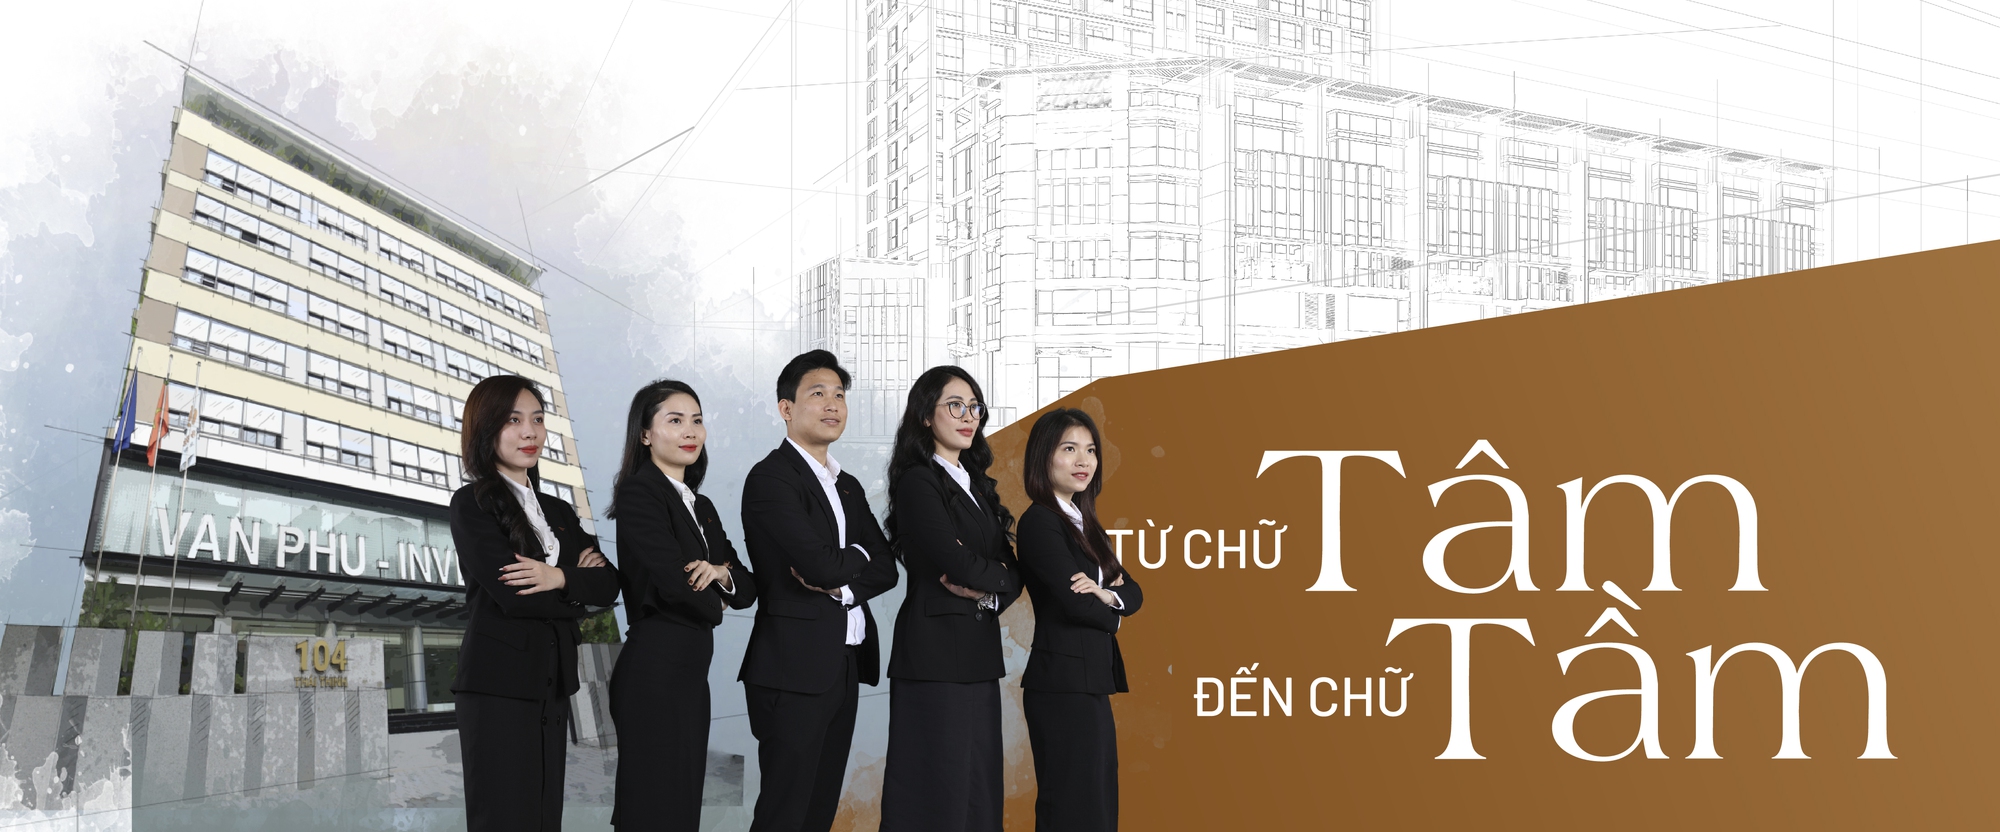 Văn Phú - Invest kiến tạo tương lai Việt từ hành trình 20 năm chuyên tâm tạo giá trị sống- Ảnh 2.